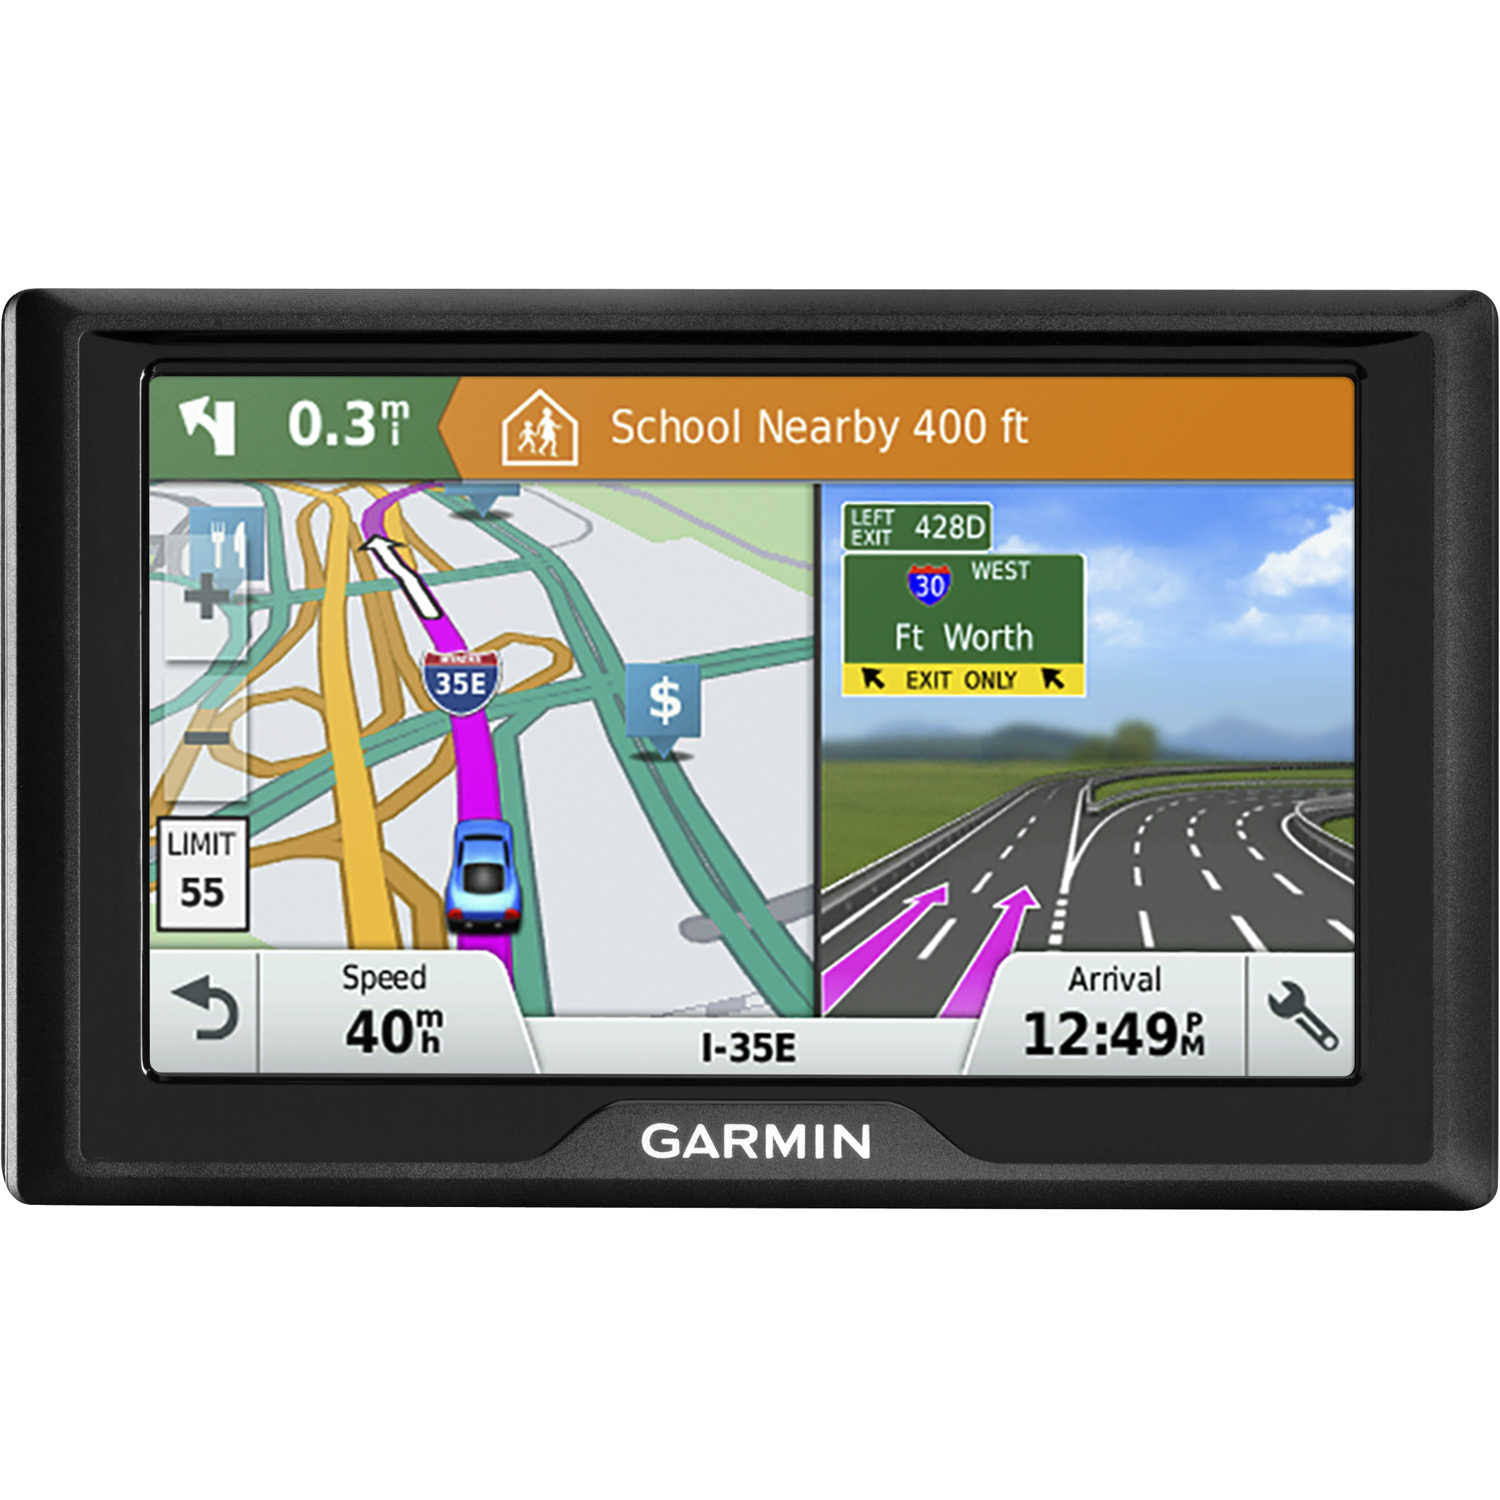  Garmin ドライブ51USALM GPSナビゲーターシステム、ライフタイムマップ、音声によるターンバイターン方式の経路案内、直接アクセス、ドライバーアラ...